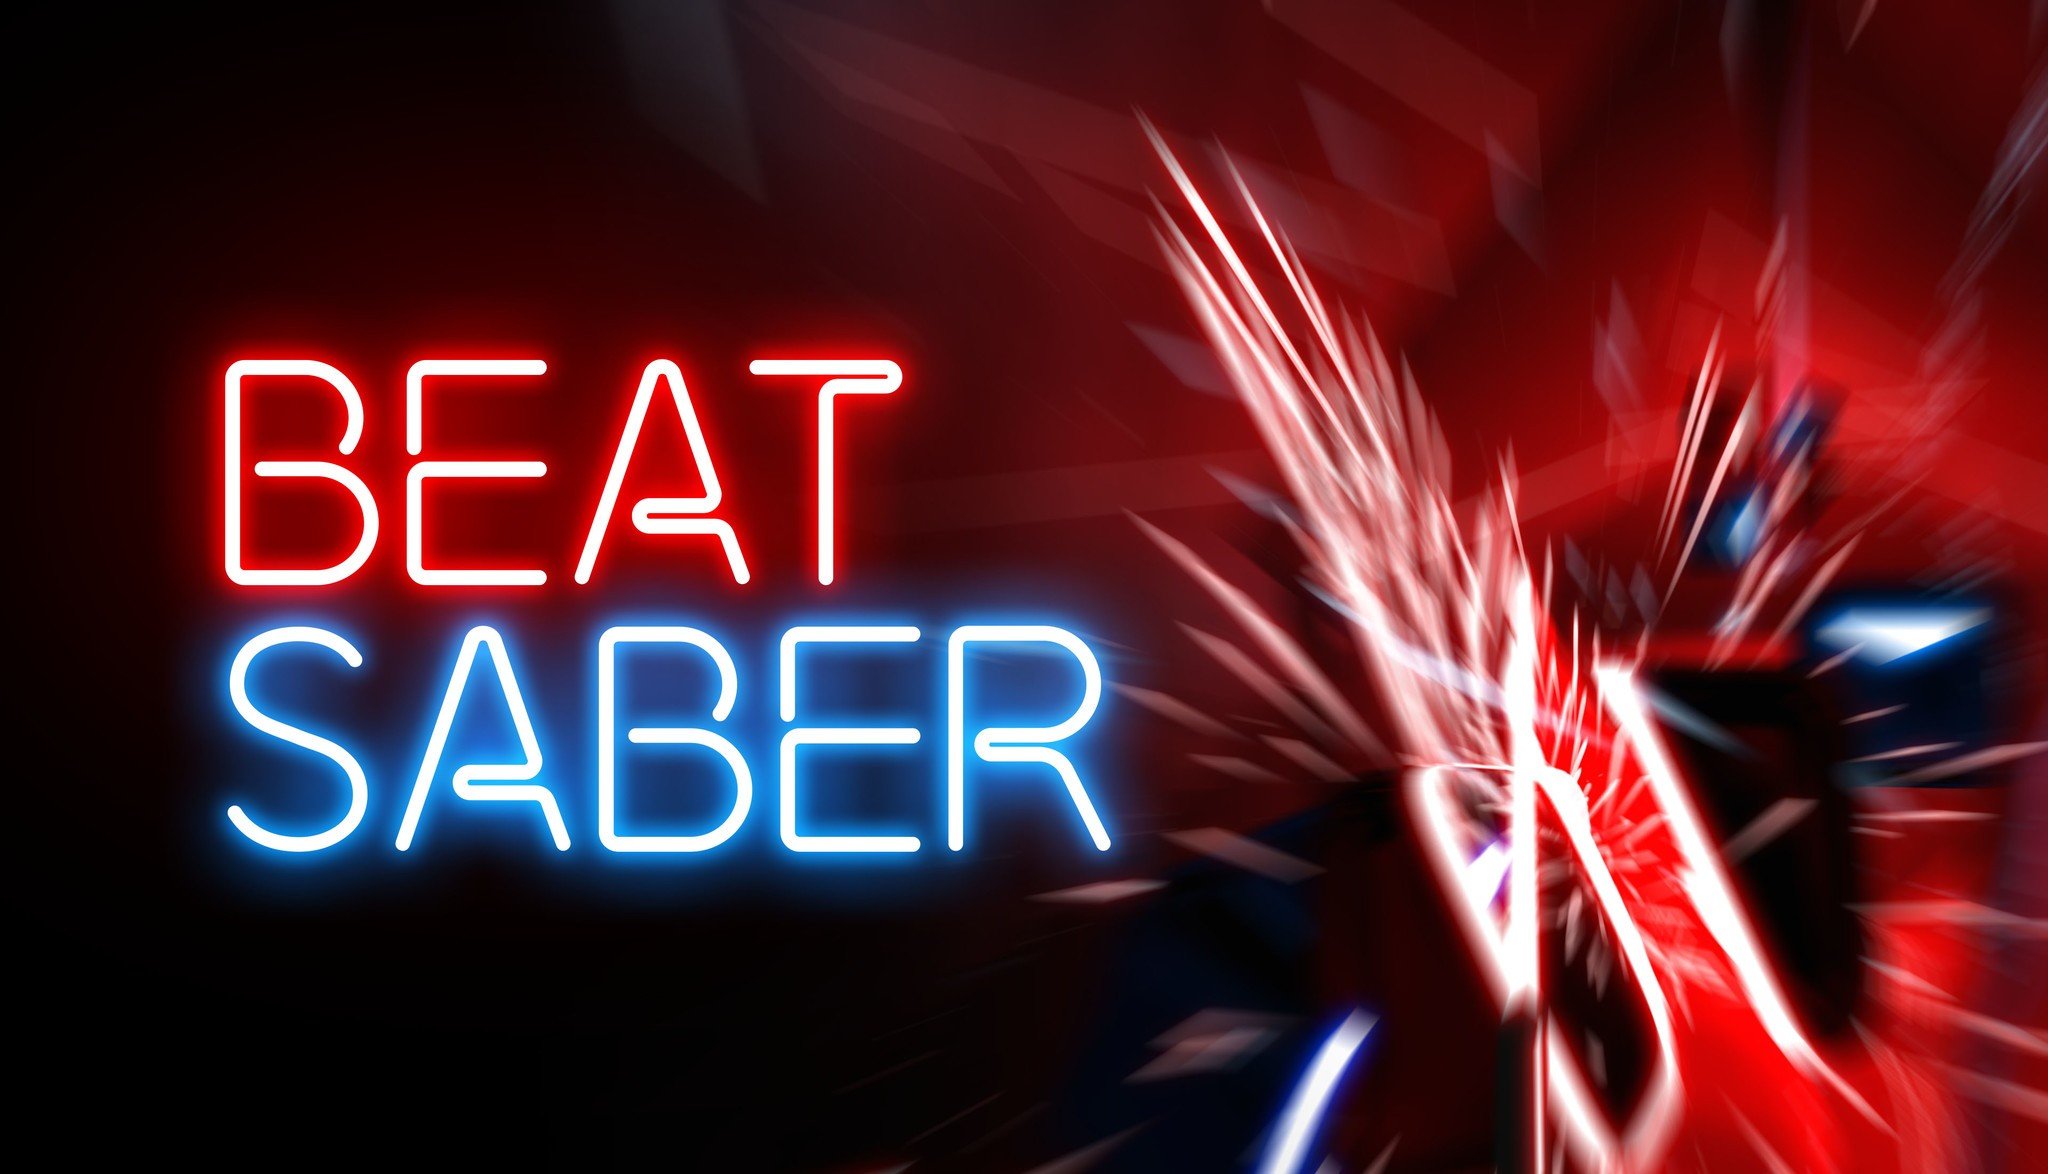 beat-saber-hero-01.jpg